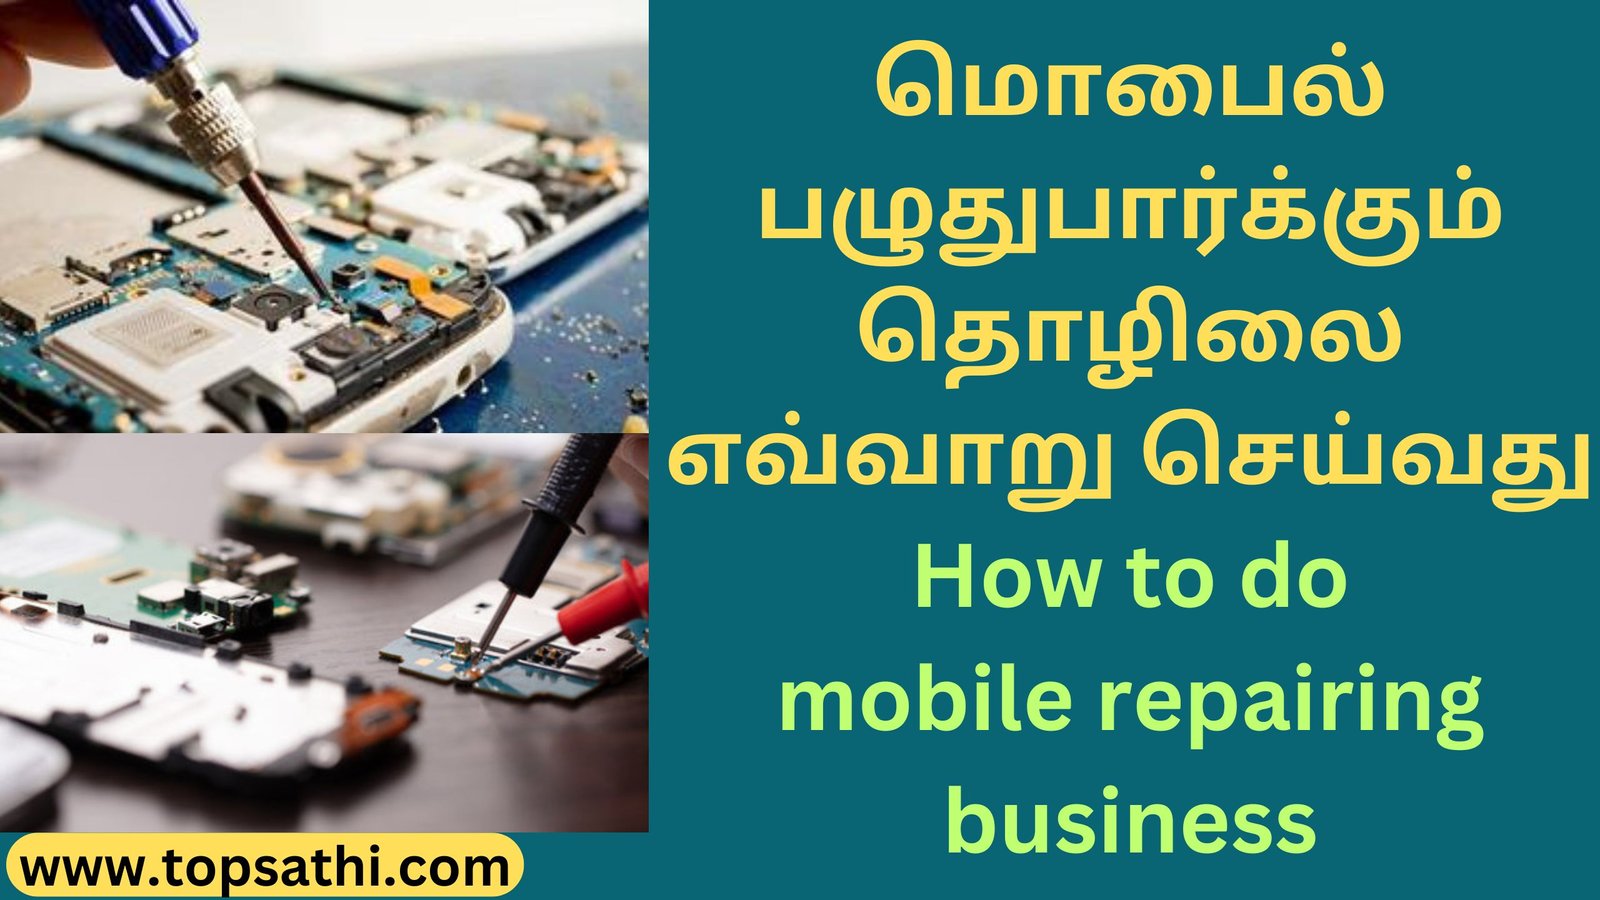 மொபைல் பழுதுபார்க்கும் தொழிலை எவ்வாறு செய்வது How to do mobile repairing business